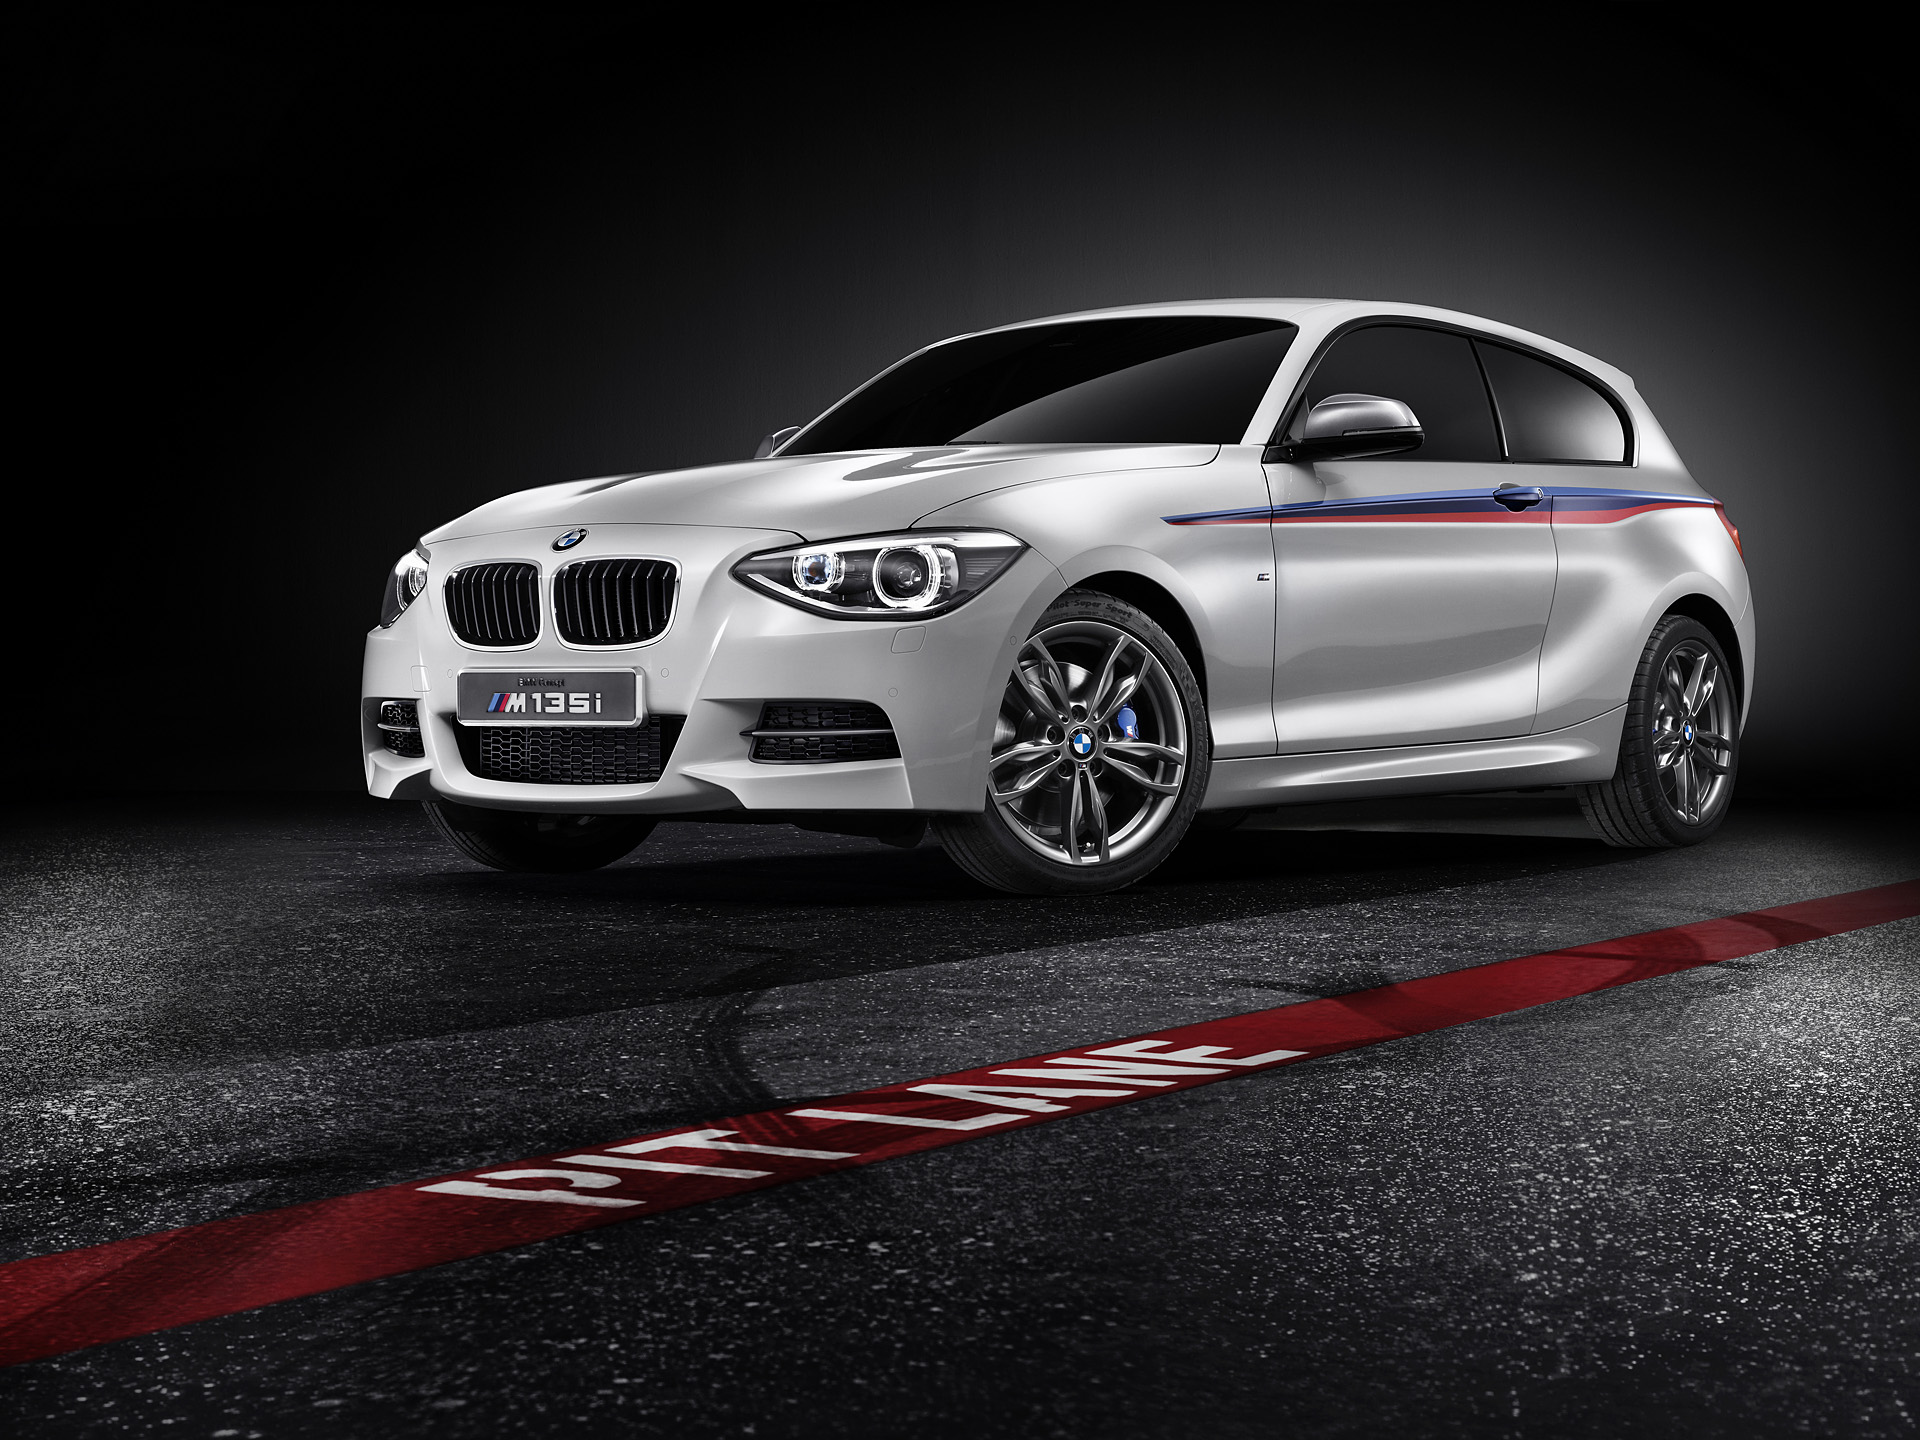 2012 BMW Concept M135i HD Wallpaper